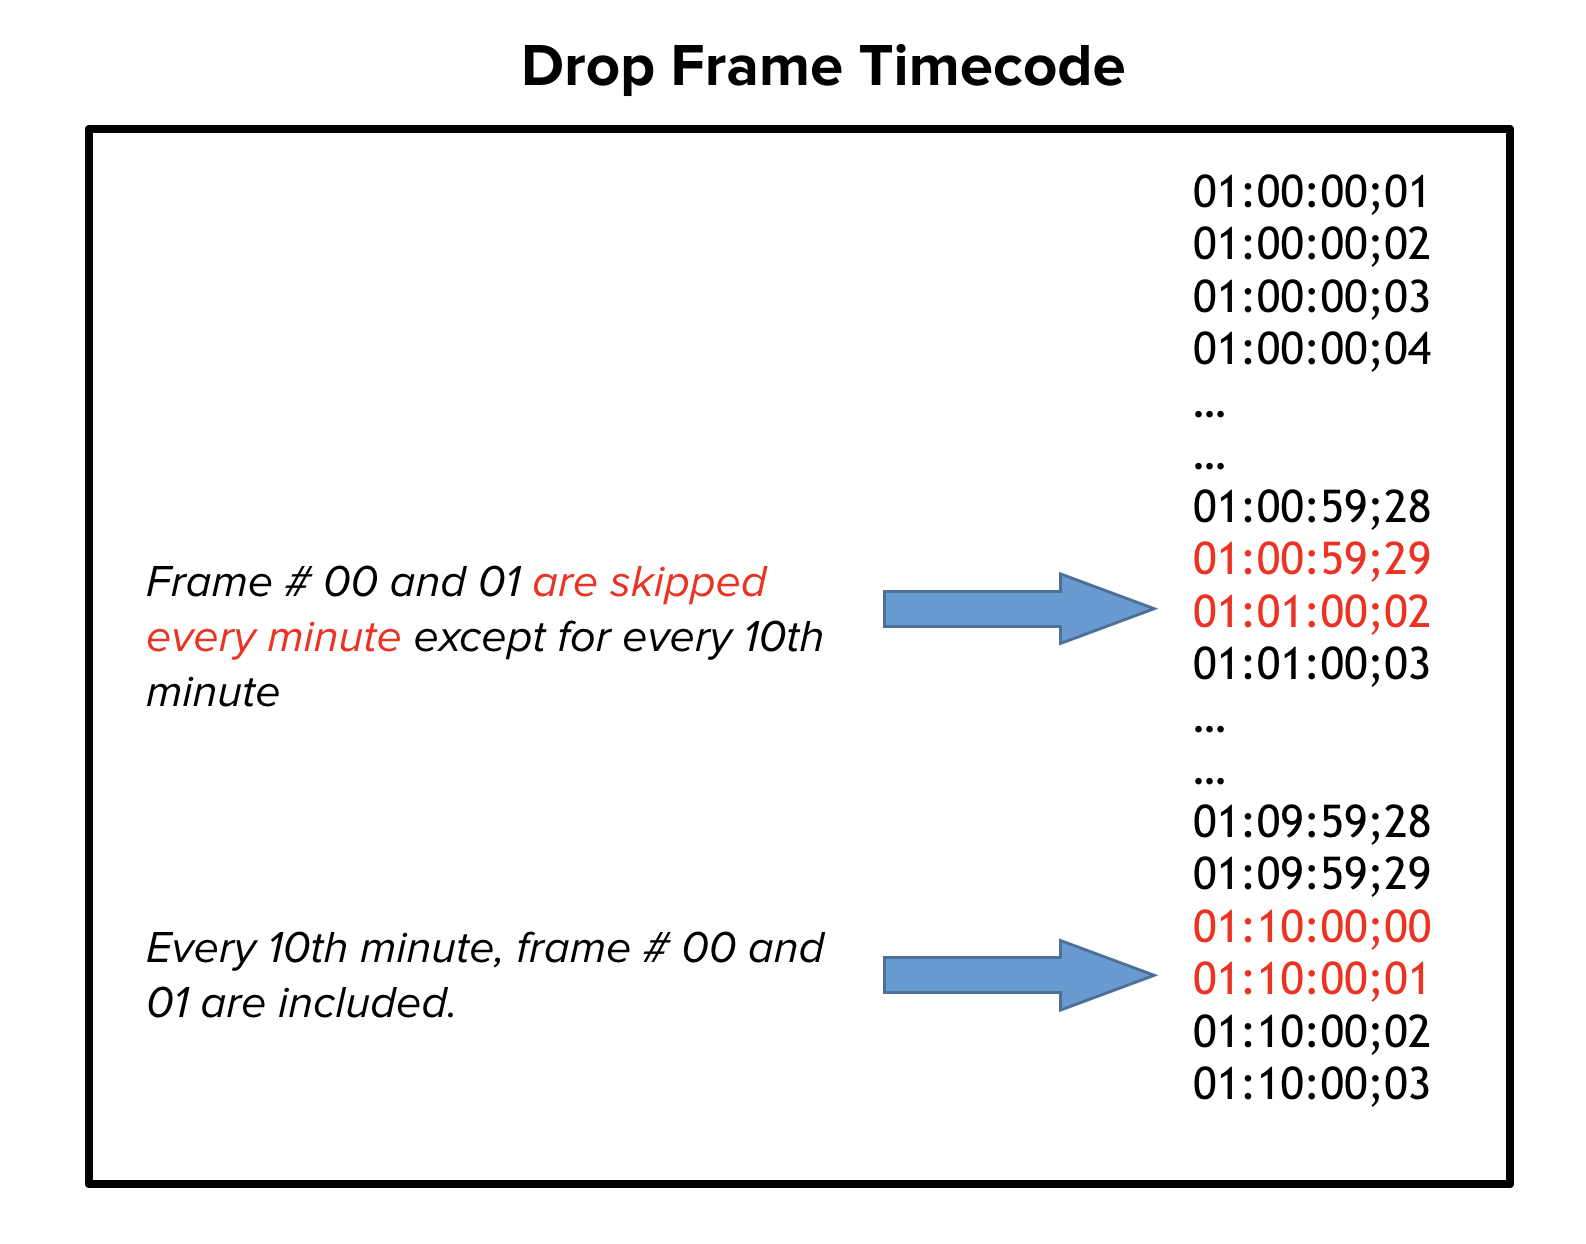 Drop frame timecode